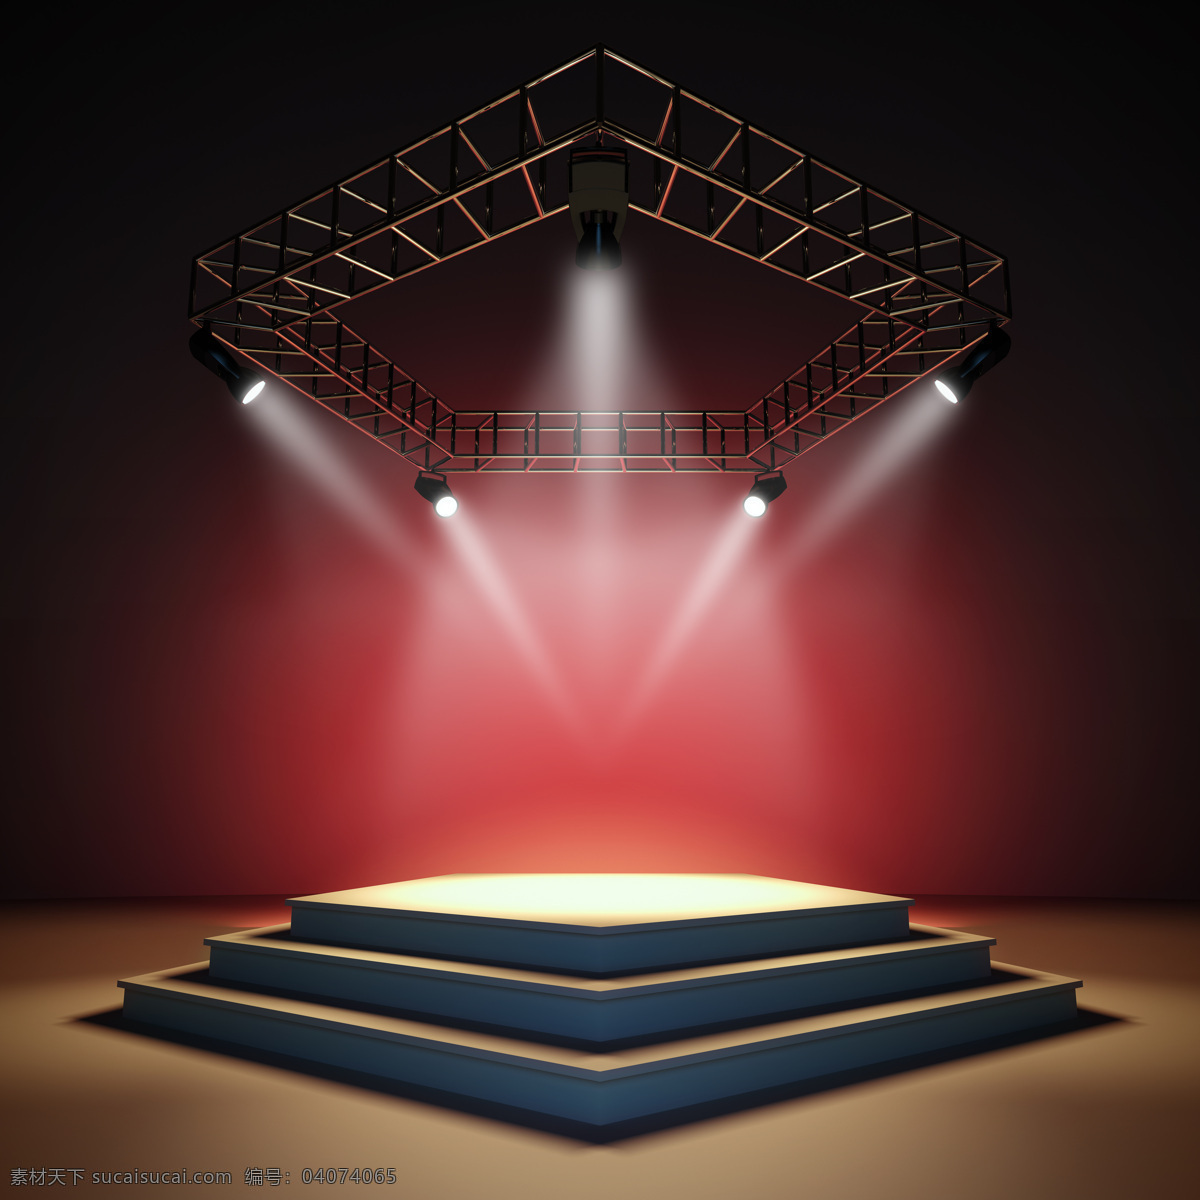 红色 背景 灯光 个人 舞台 造型 表演 舞台设计 主演舞台设计 主造型台设计 方形台 头顶 直接 照明 红色背景 其他类别 生活百科